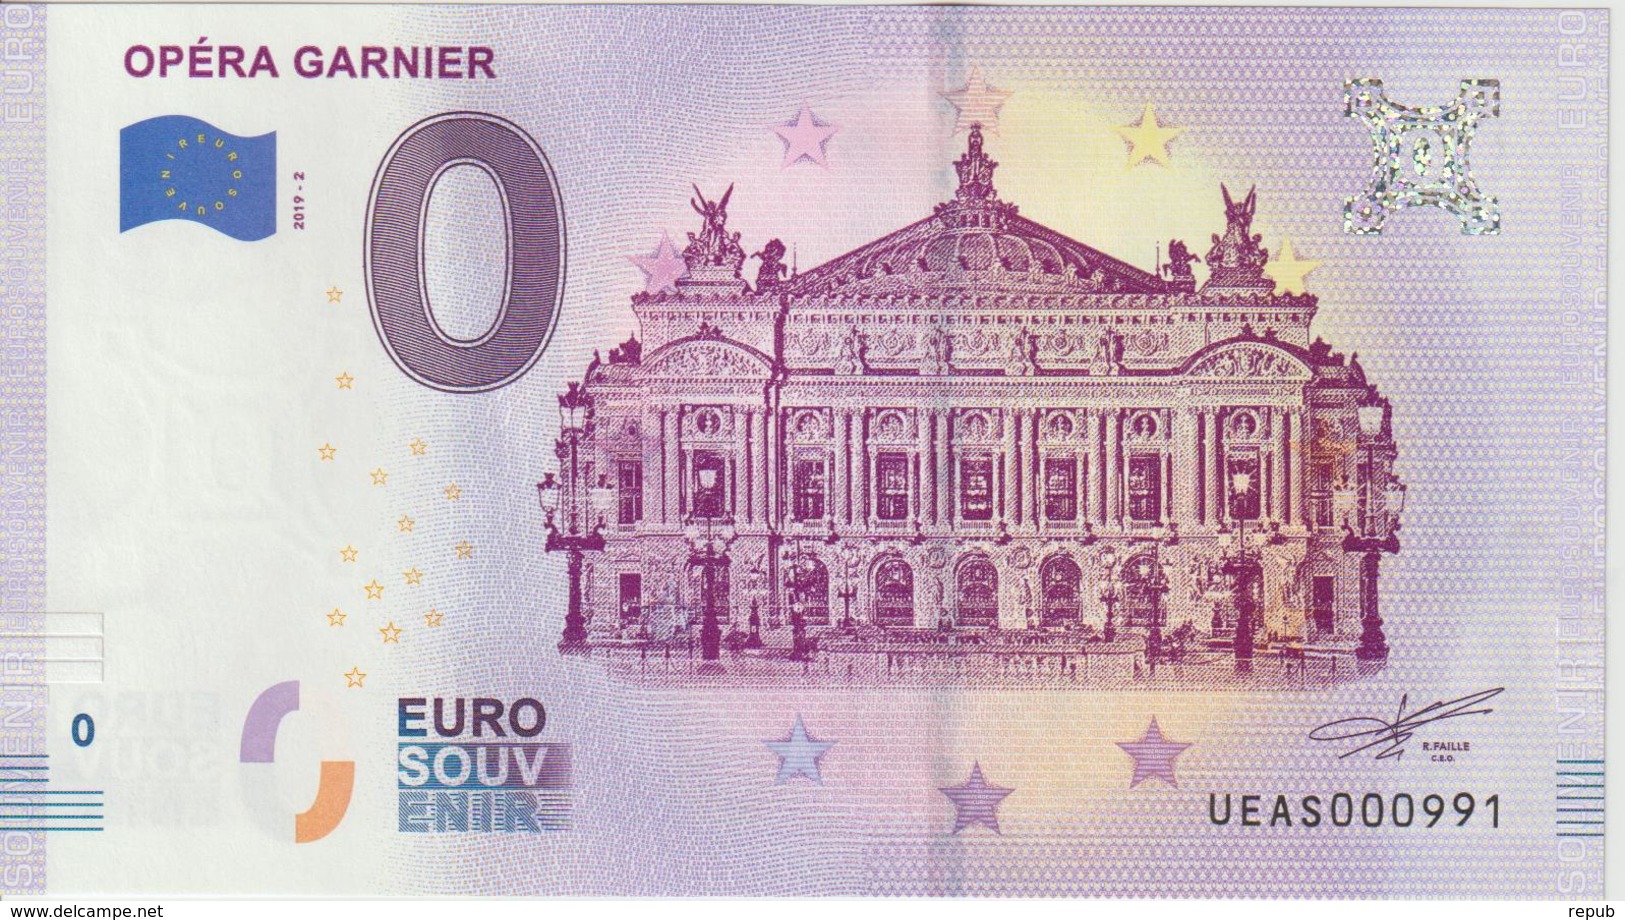 Billet Touristique 0 Euro Souvenir France 75 Opéra Garnier 2019-2 N°UEAS000991 - Essais Privés / Non-officiels